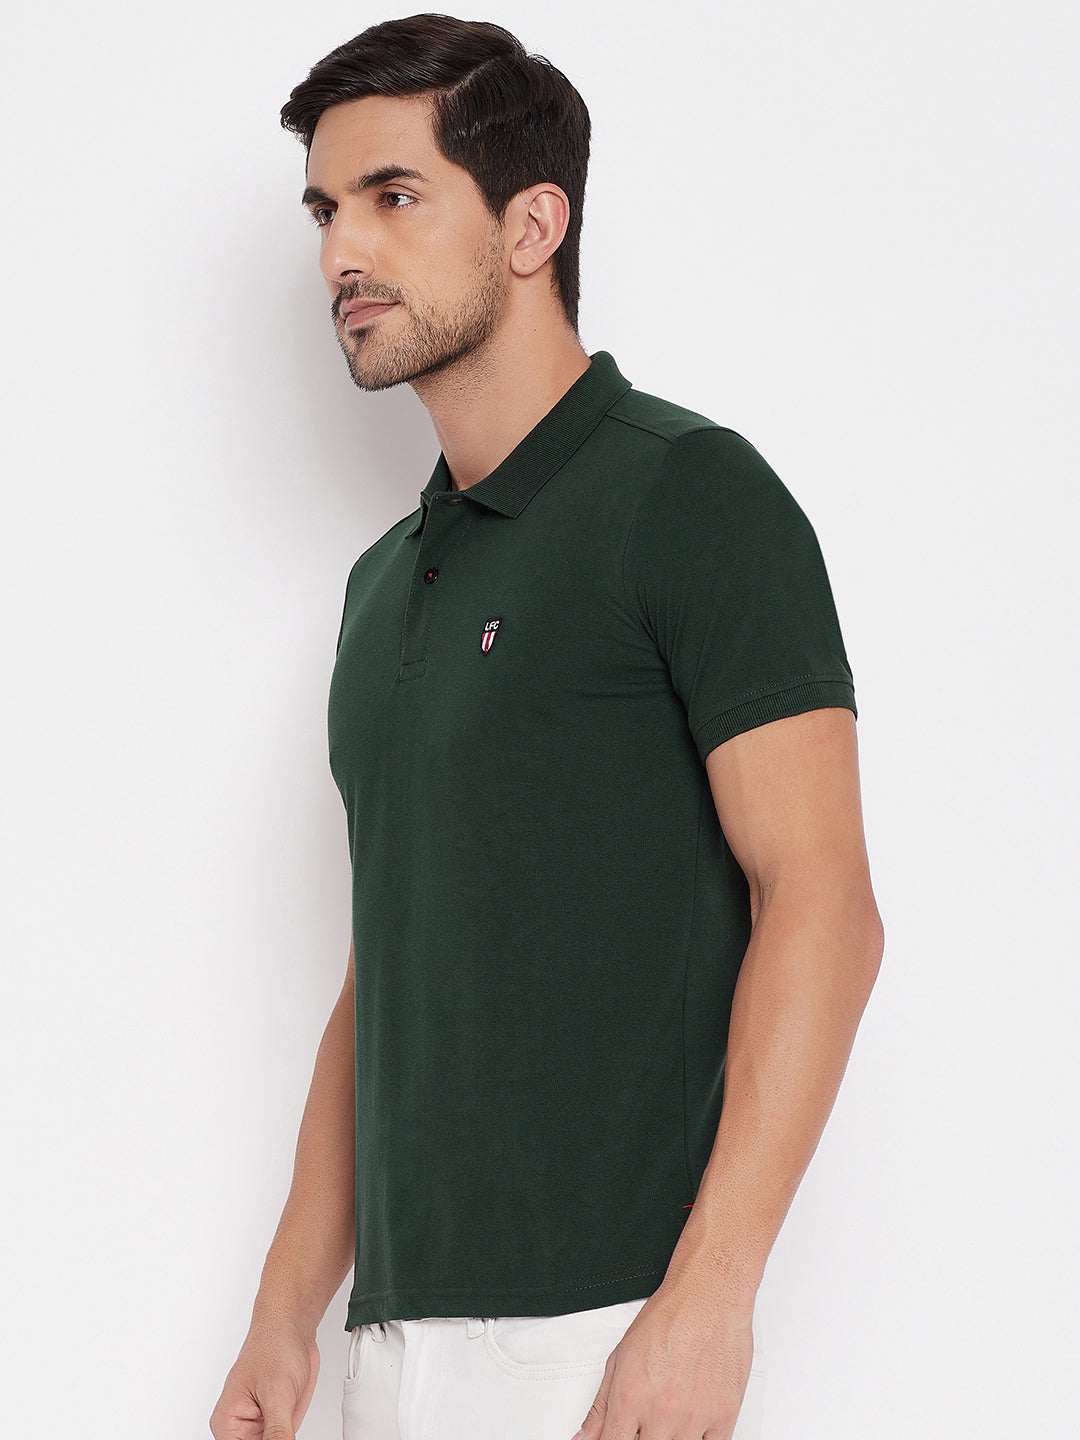 LIVFREE  Men's Regular Fit Solid T-Shirt- Bottel Green